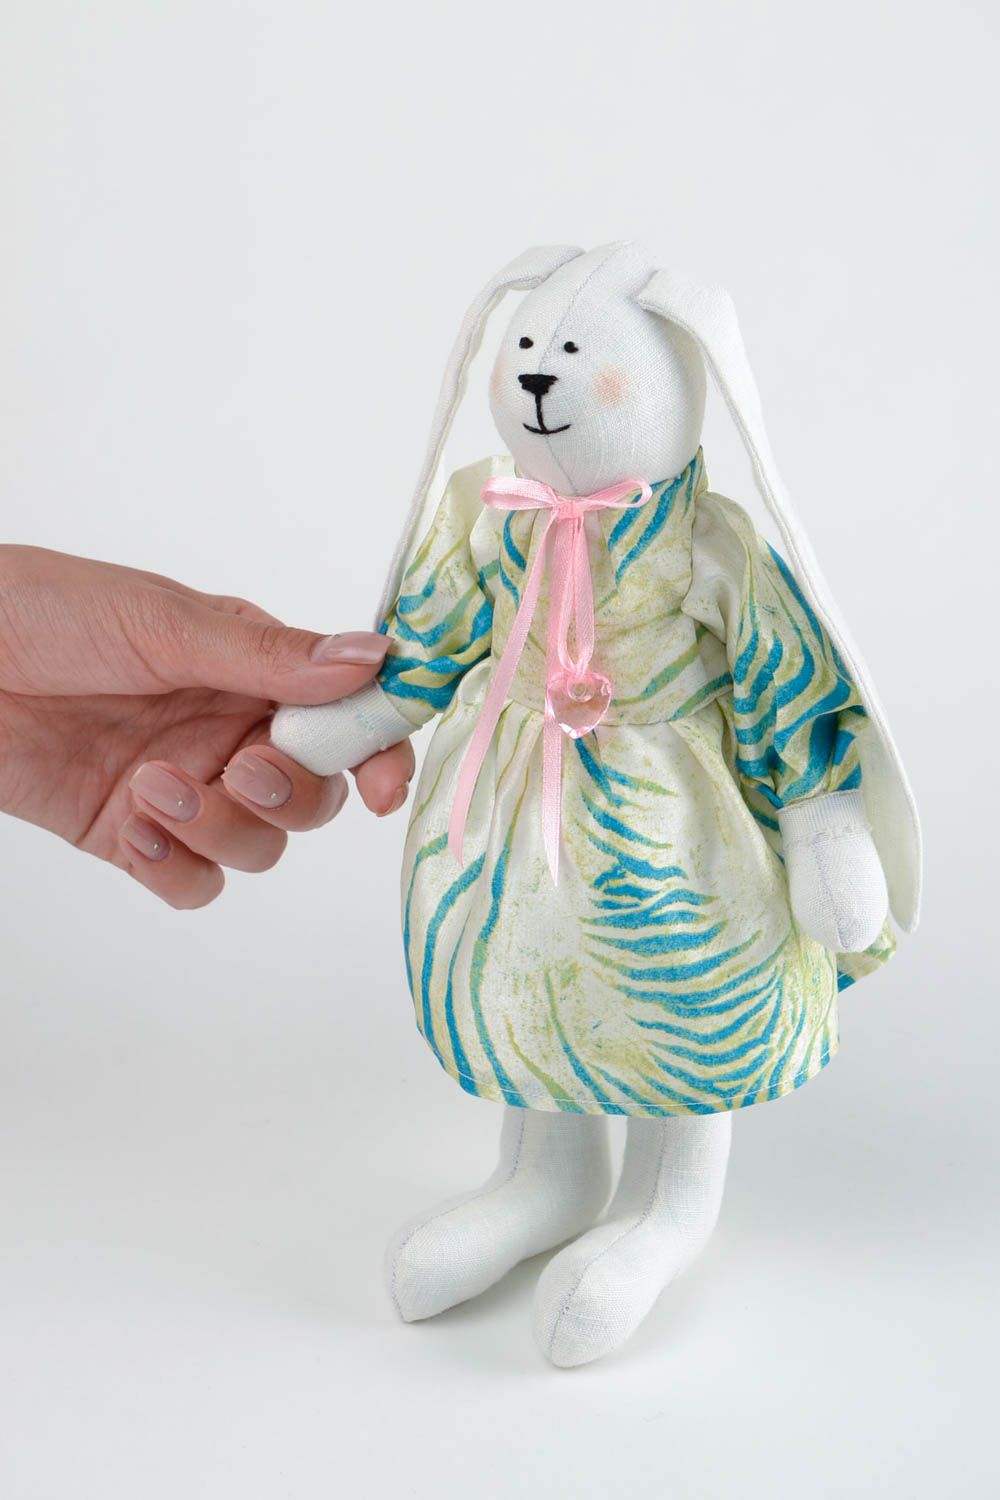 Игрушка заяц ручной работы авторская игрушка мягкая игрушка из льна и хлопка фото 2